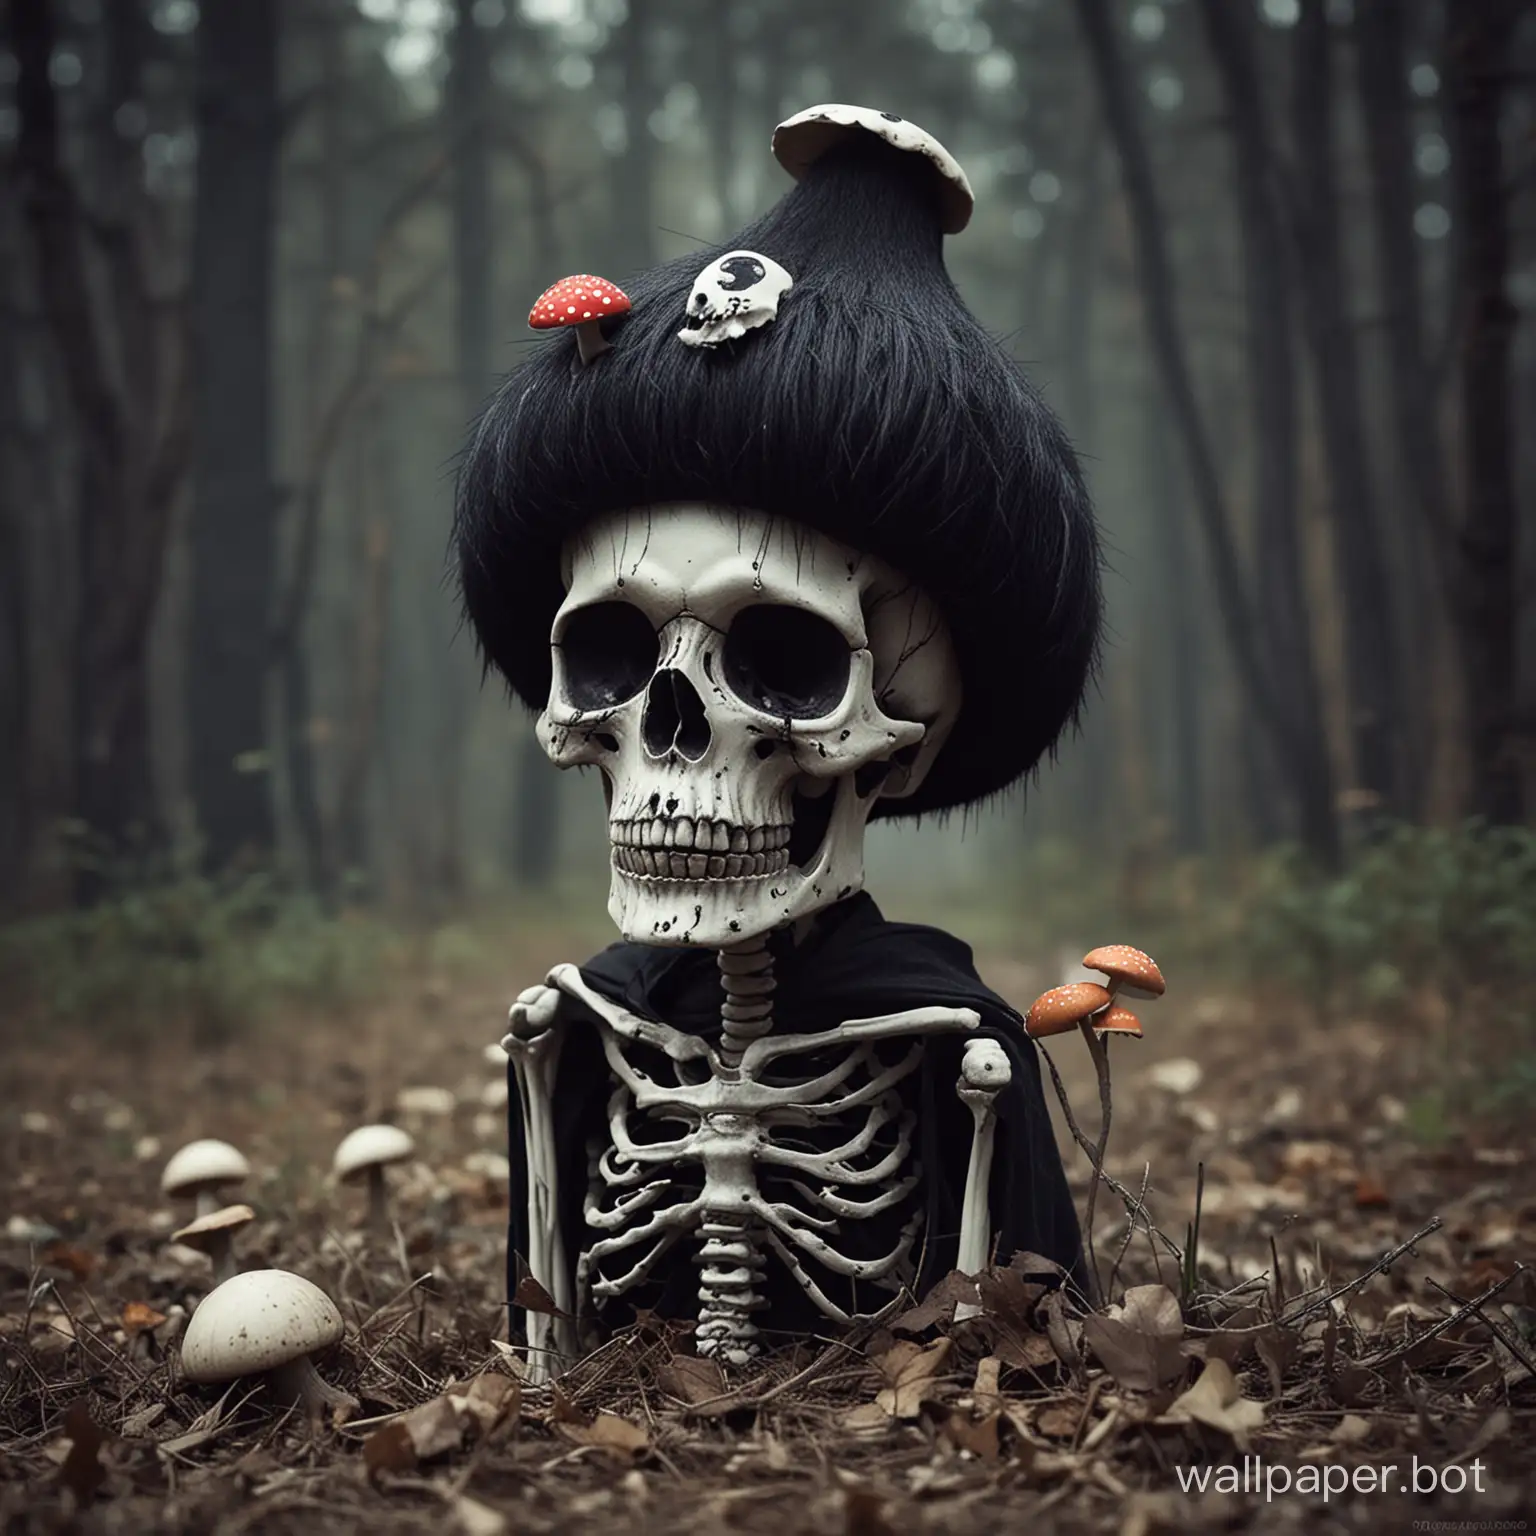 Emo-Skeleton-with-Mushroom-Hat-in-a-Desolate-Landscape